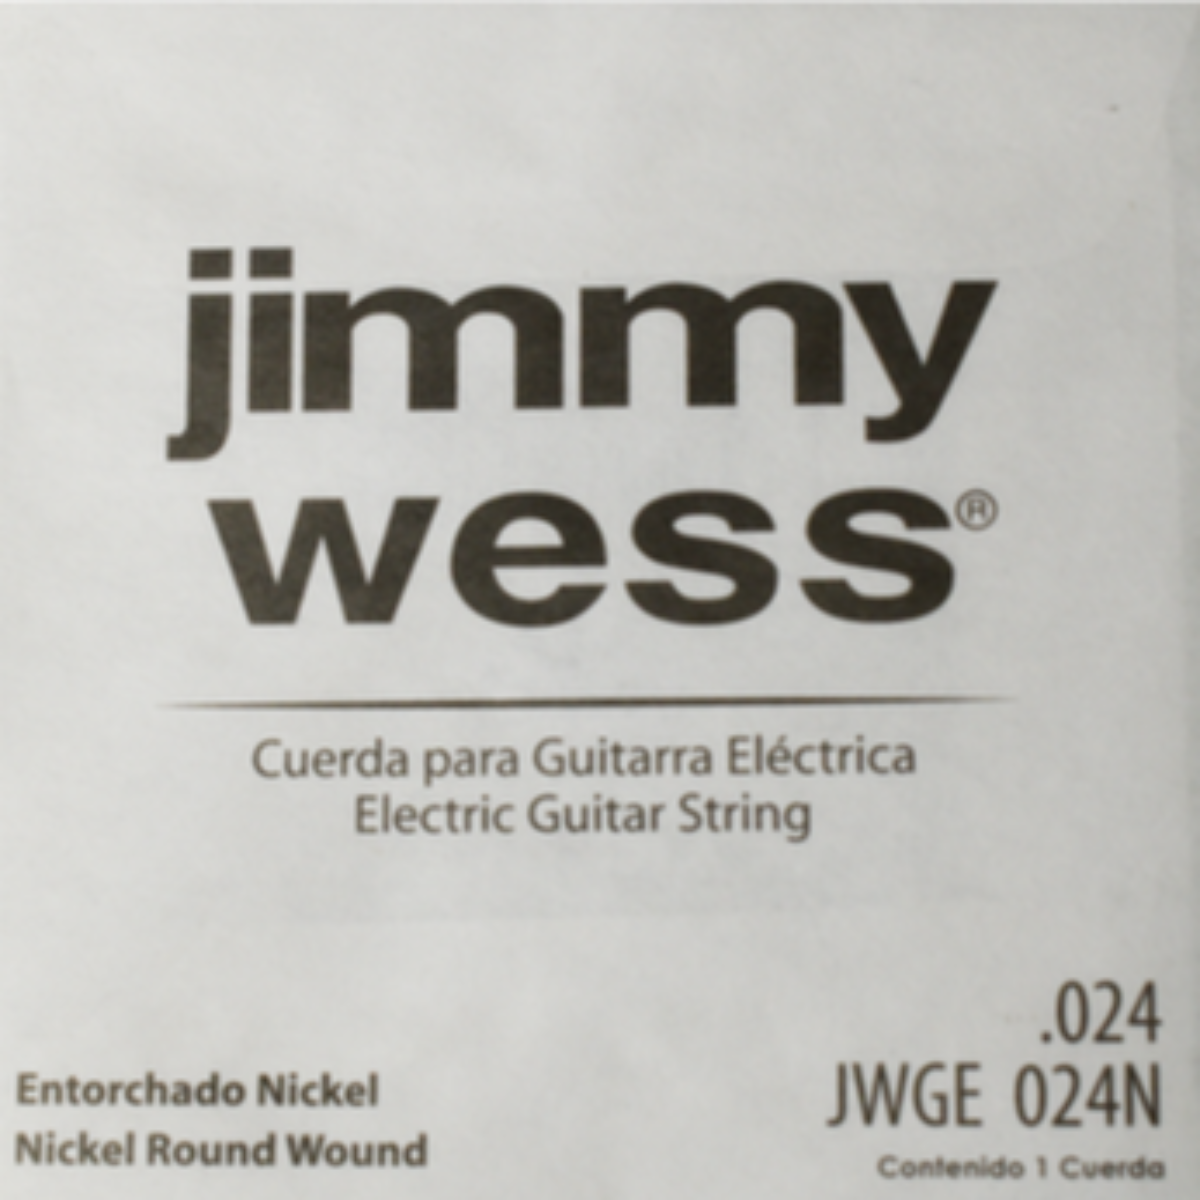 CUERDA P/GUITARRA ELECTRICA JIMMYWESS PRO 4A NIQ24